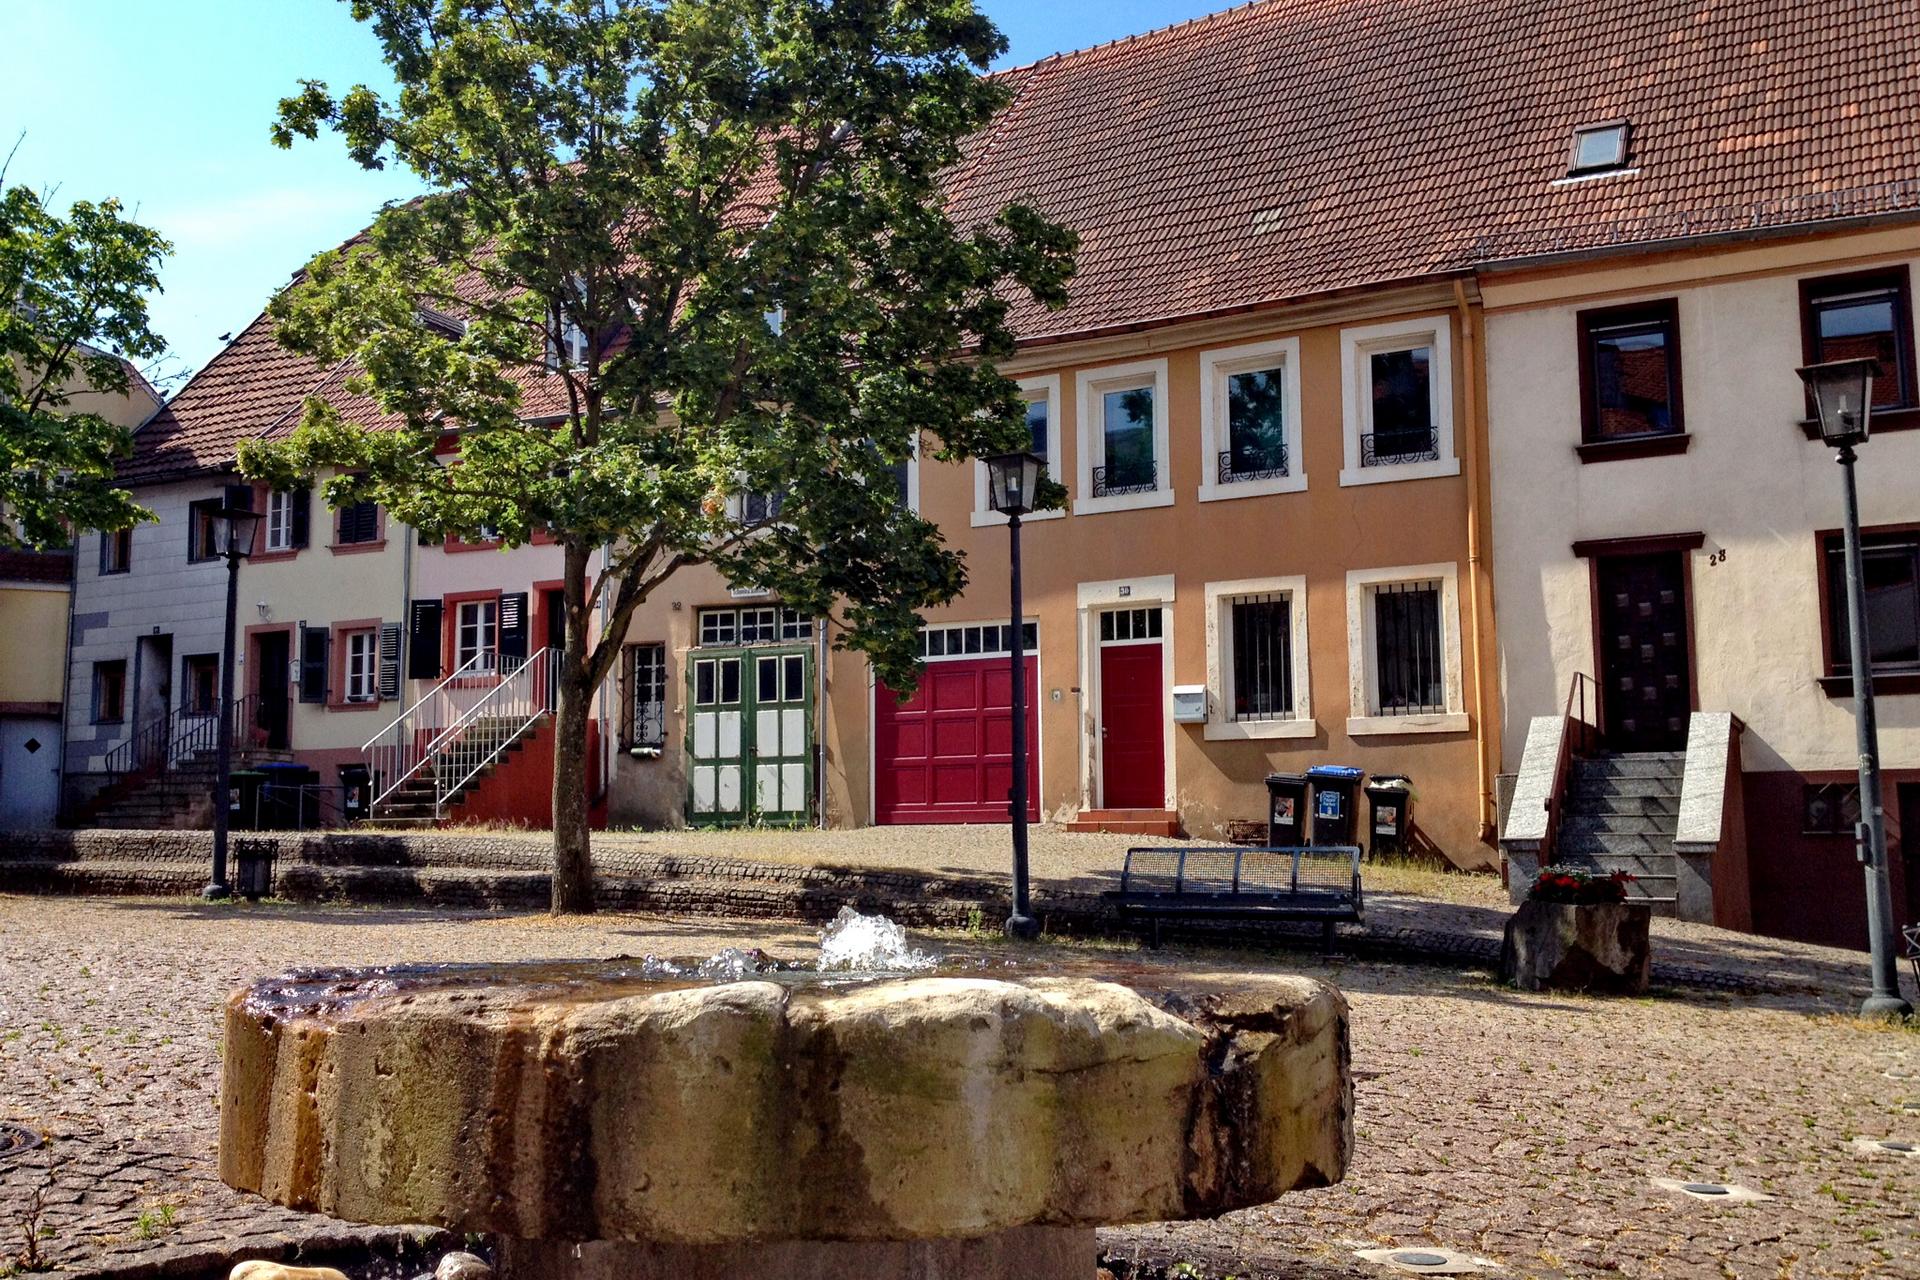 Bunte Handwerkerhäuser im barocken Stil stehen um einen kleinen Platz mit Brunnen in St. Ingbert